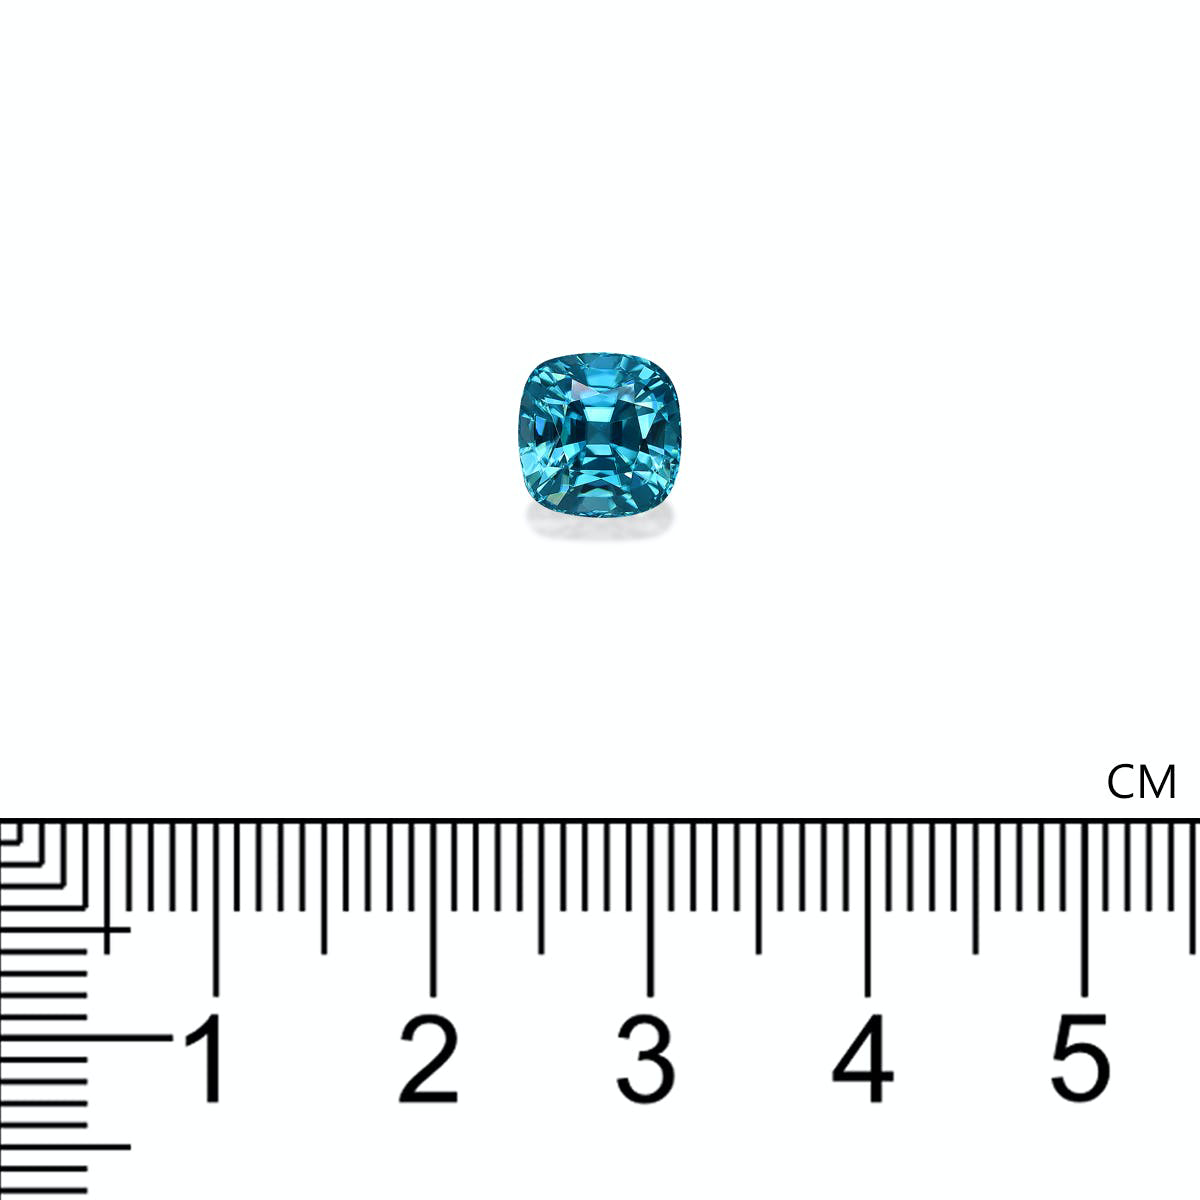 Blue Zircon 3.49ct - 7mm (ZI0921)